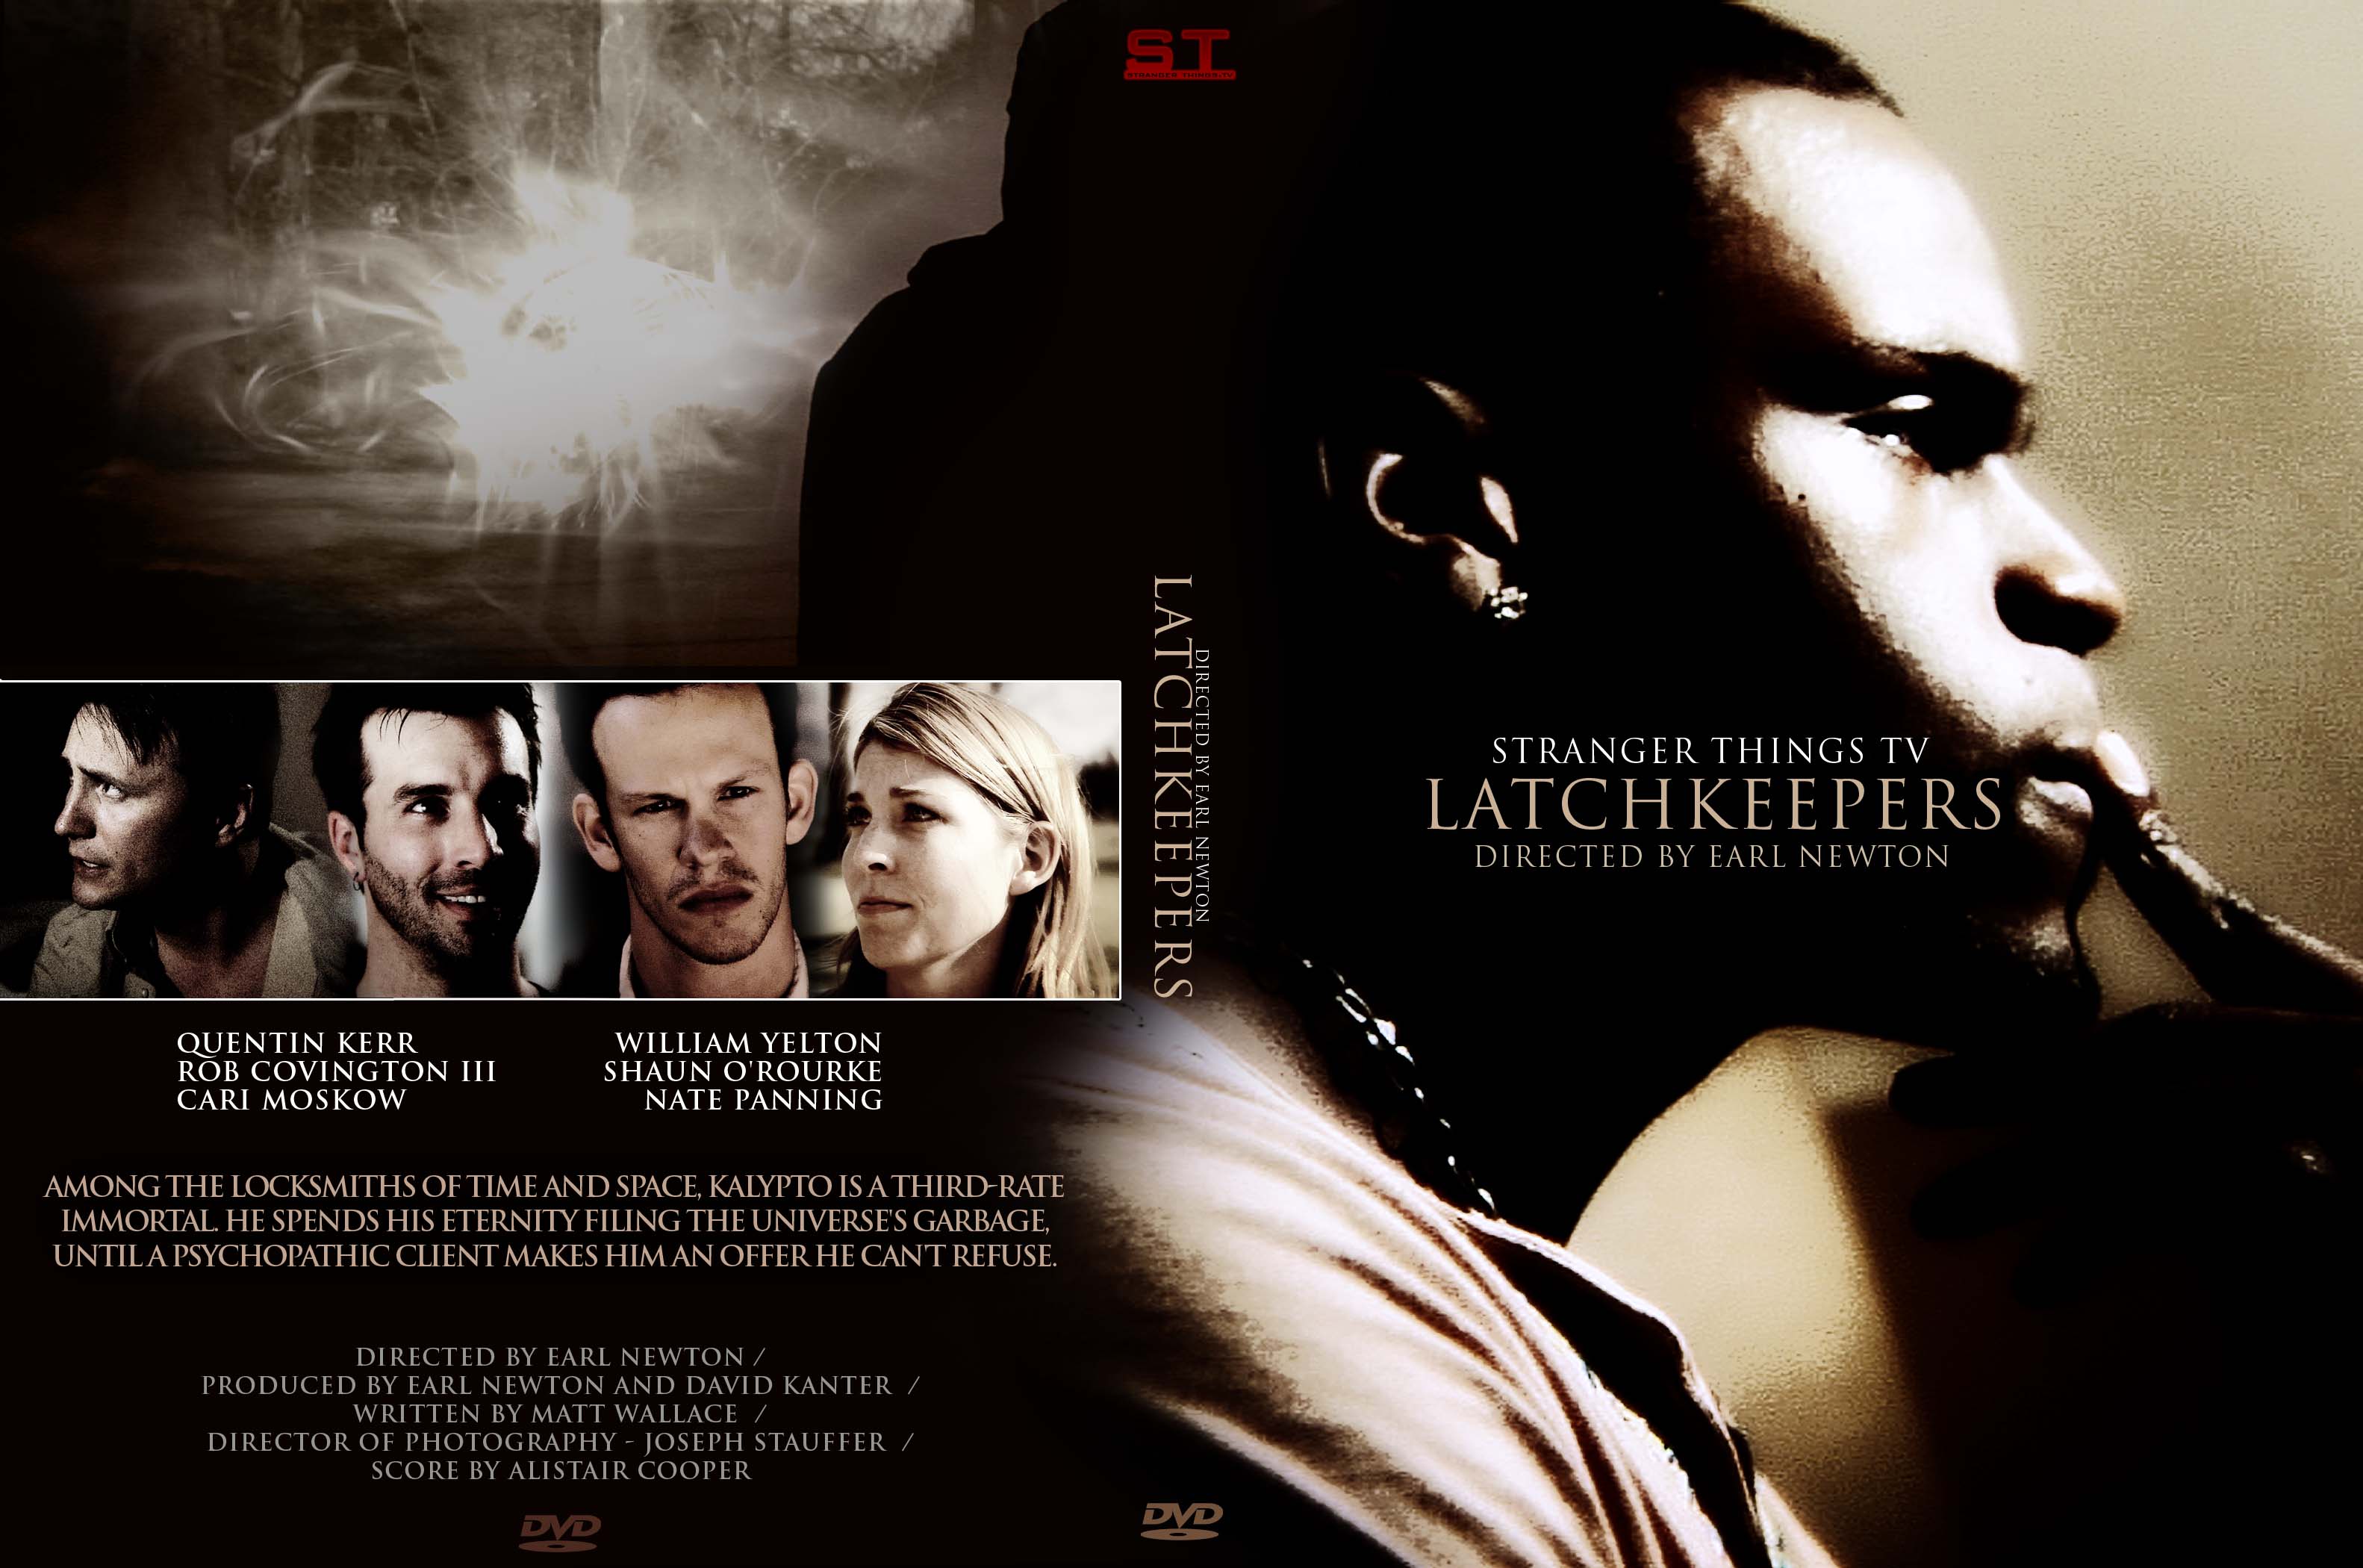 DVD cover art for 